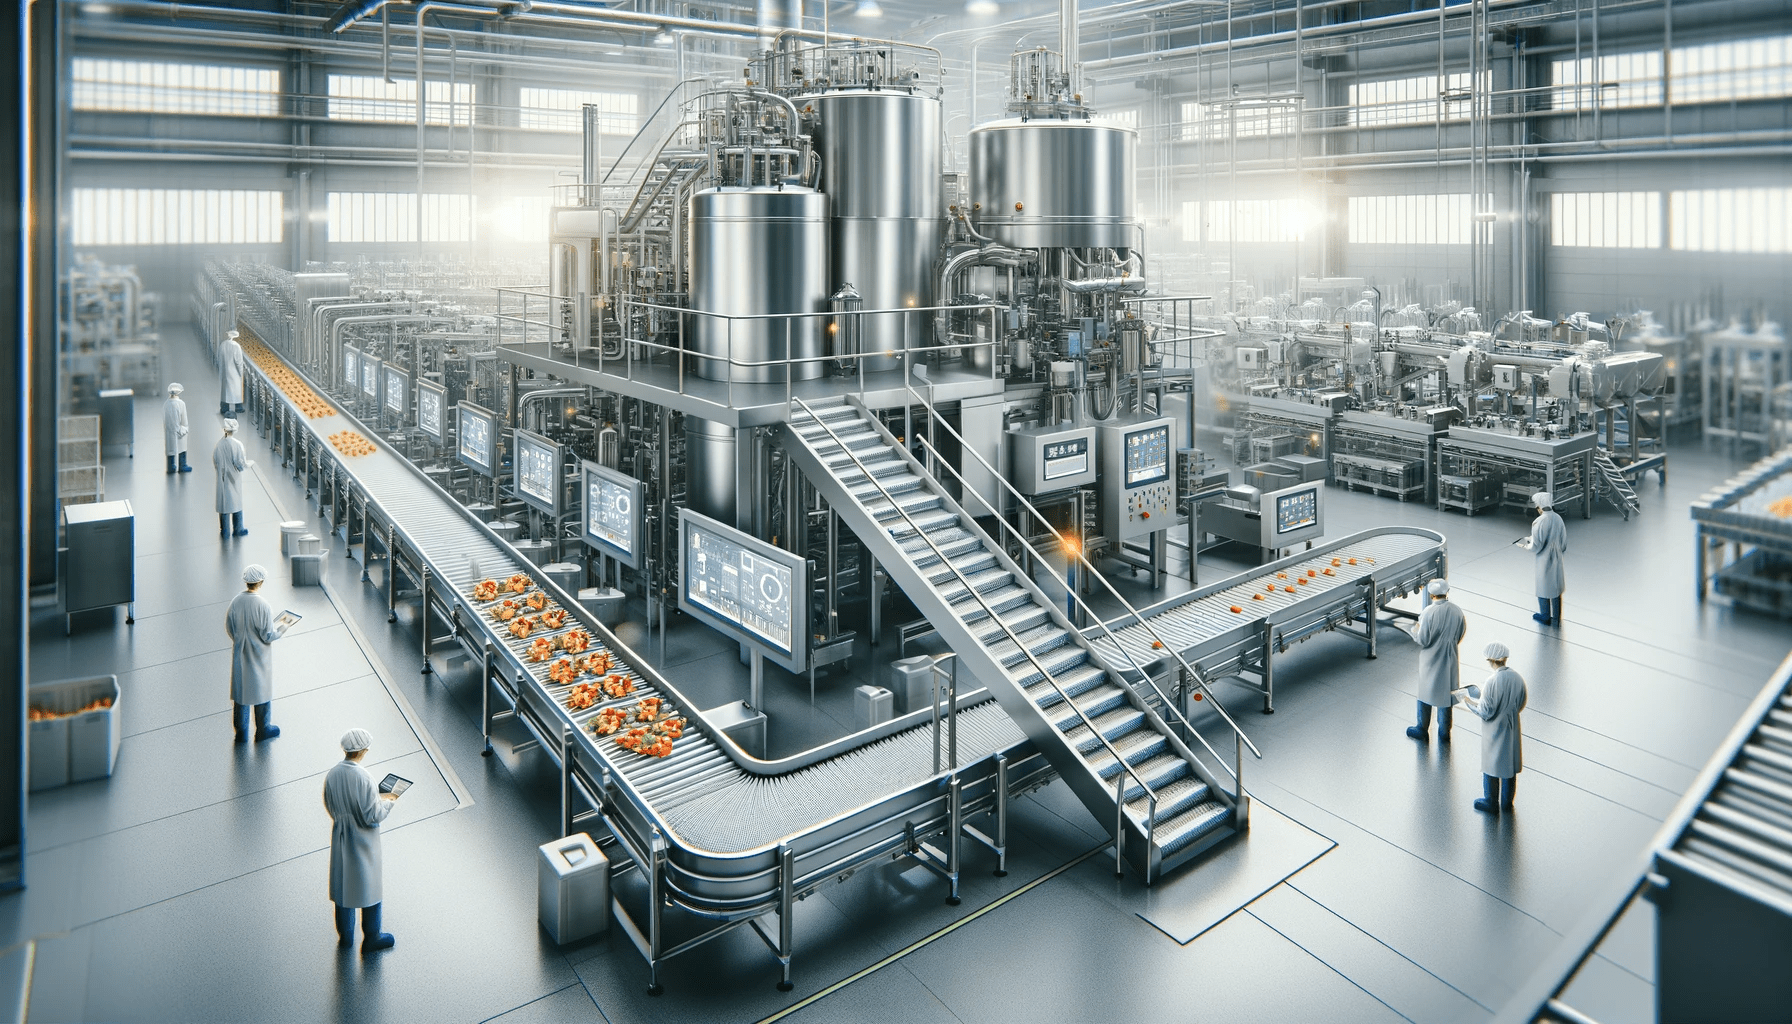 Un moderno sistema di lavorazione alimentare in un ambiente industriale. L'immagine dovrebbe rappresentare un grande macchinario in acciaio inossidabile con nastri trasportatori